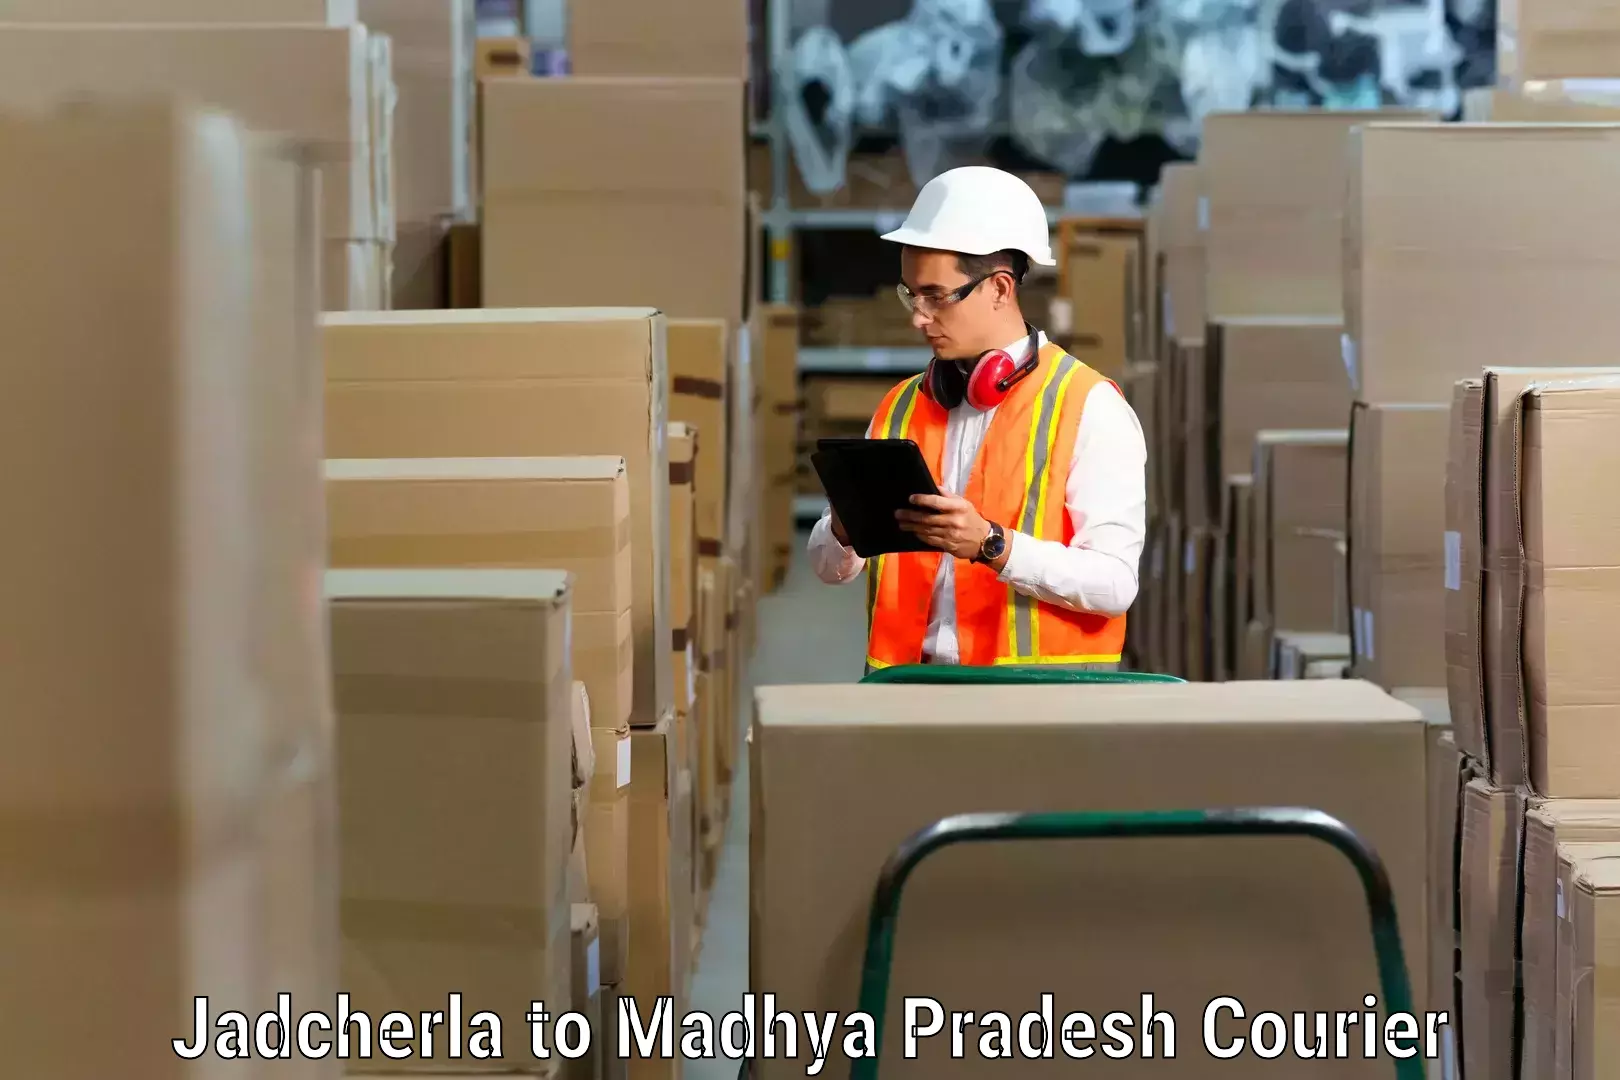 Furniture movers and packers Jadcherla to Jatara